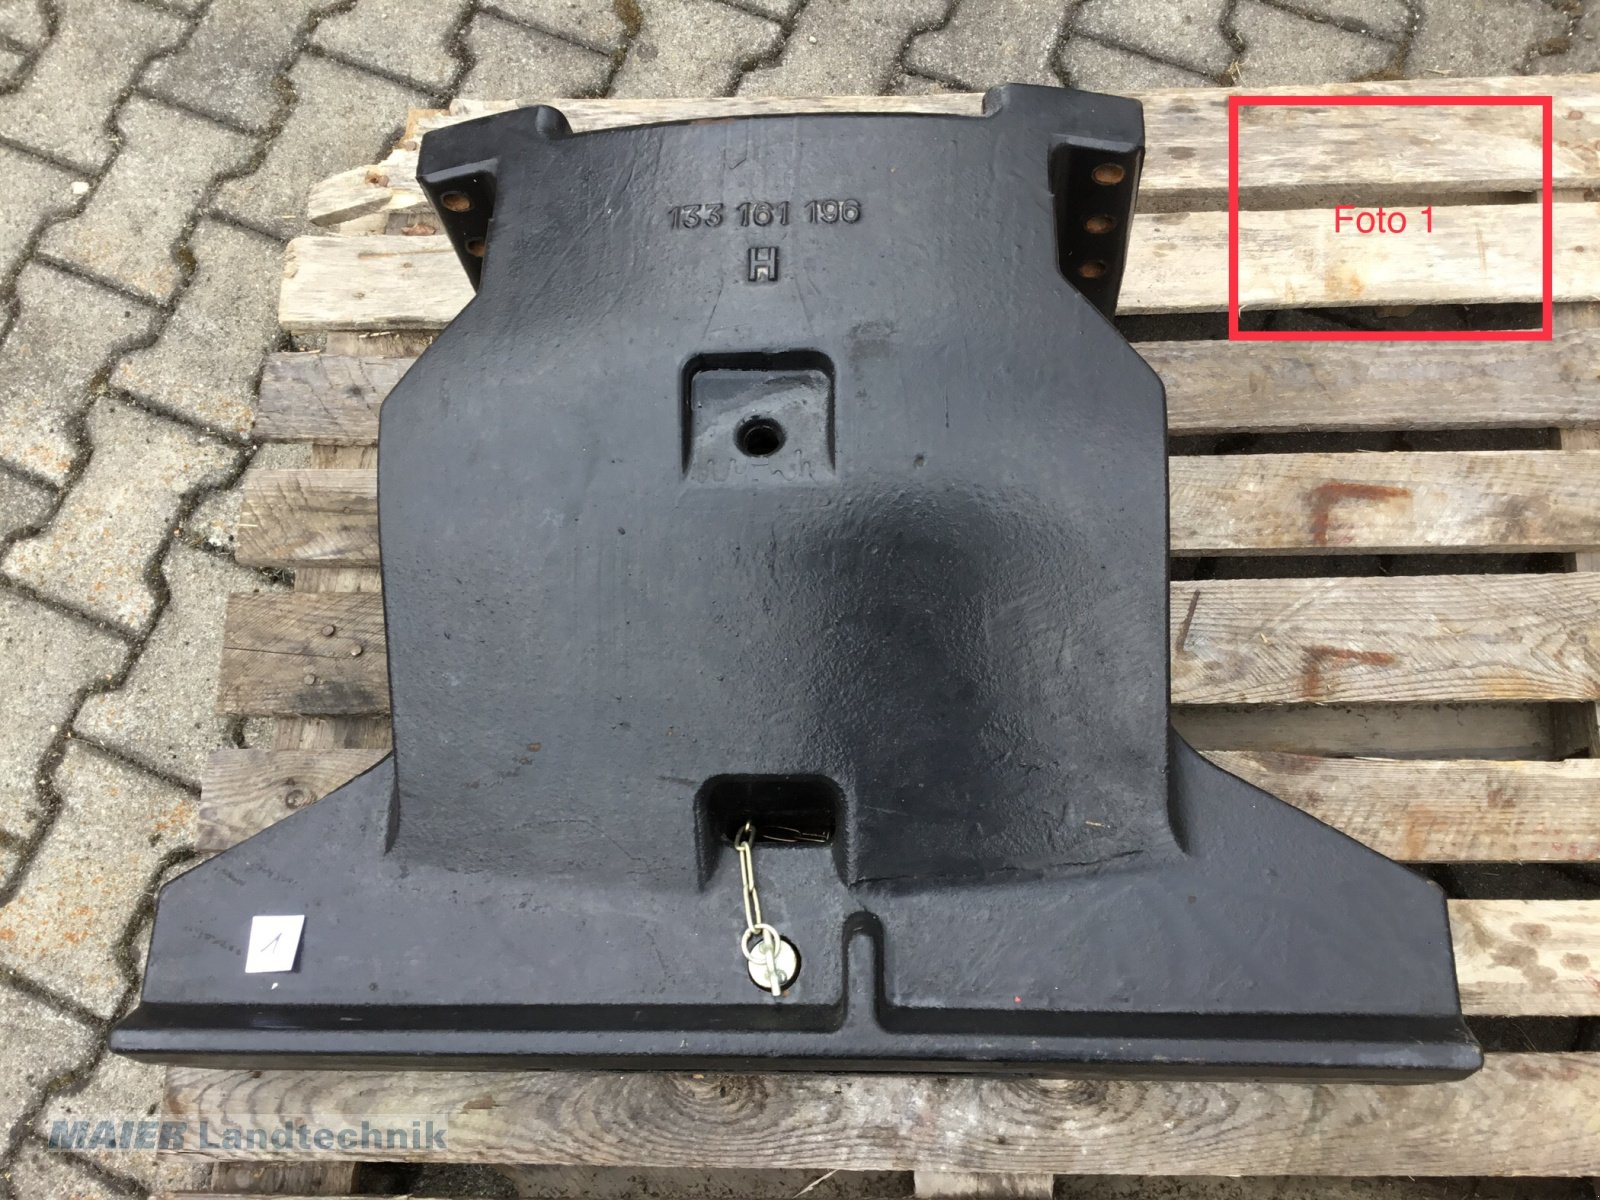 Frontgewicht des Typs Case Gewichtsträger, Gebrauchtmaschine in Dieterskirchen (Bild 1)